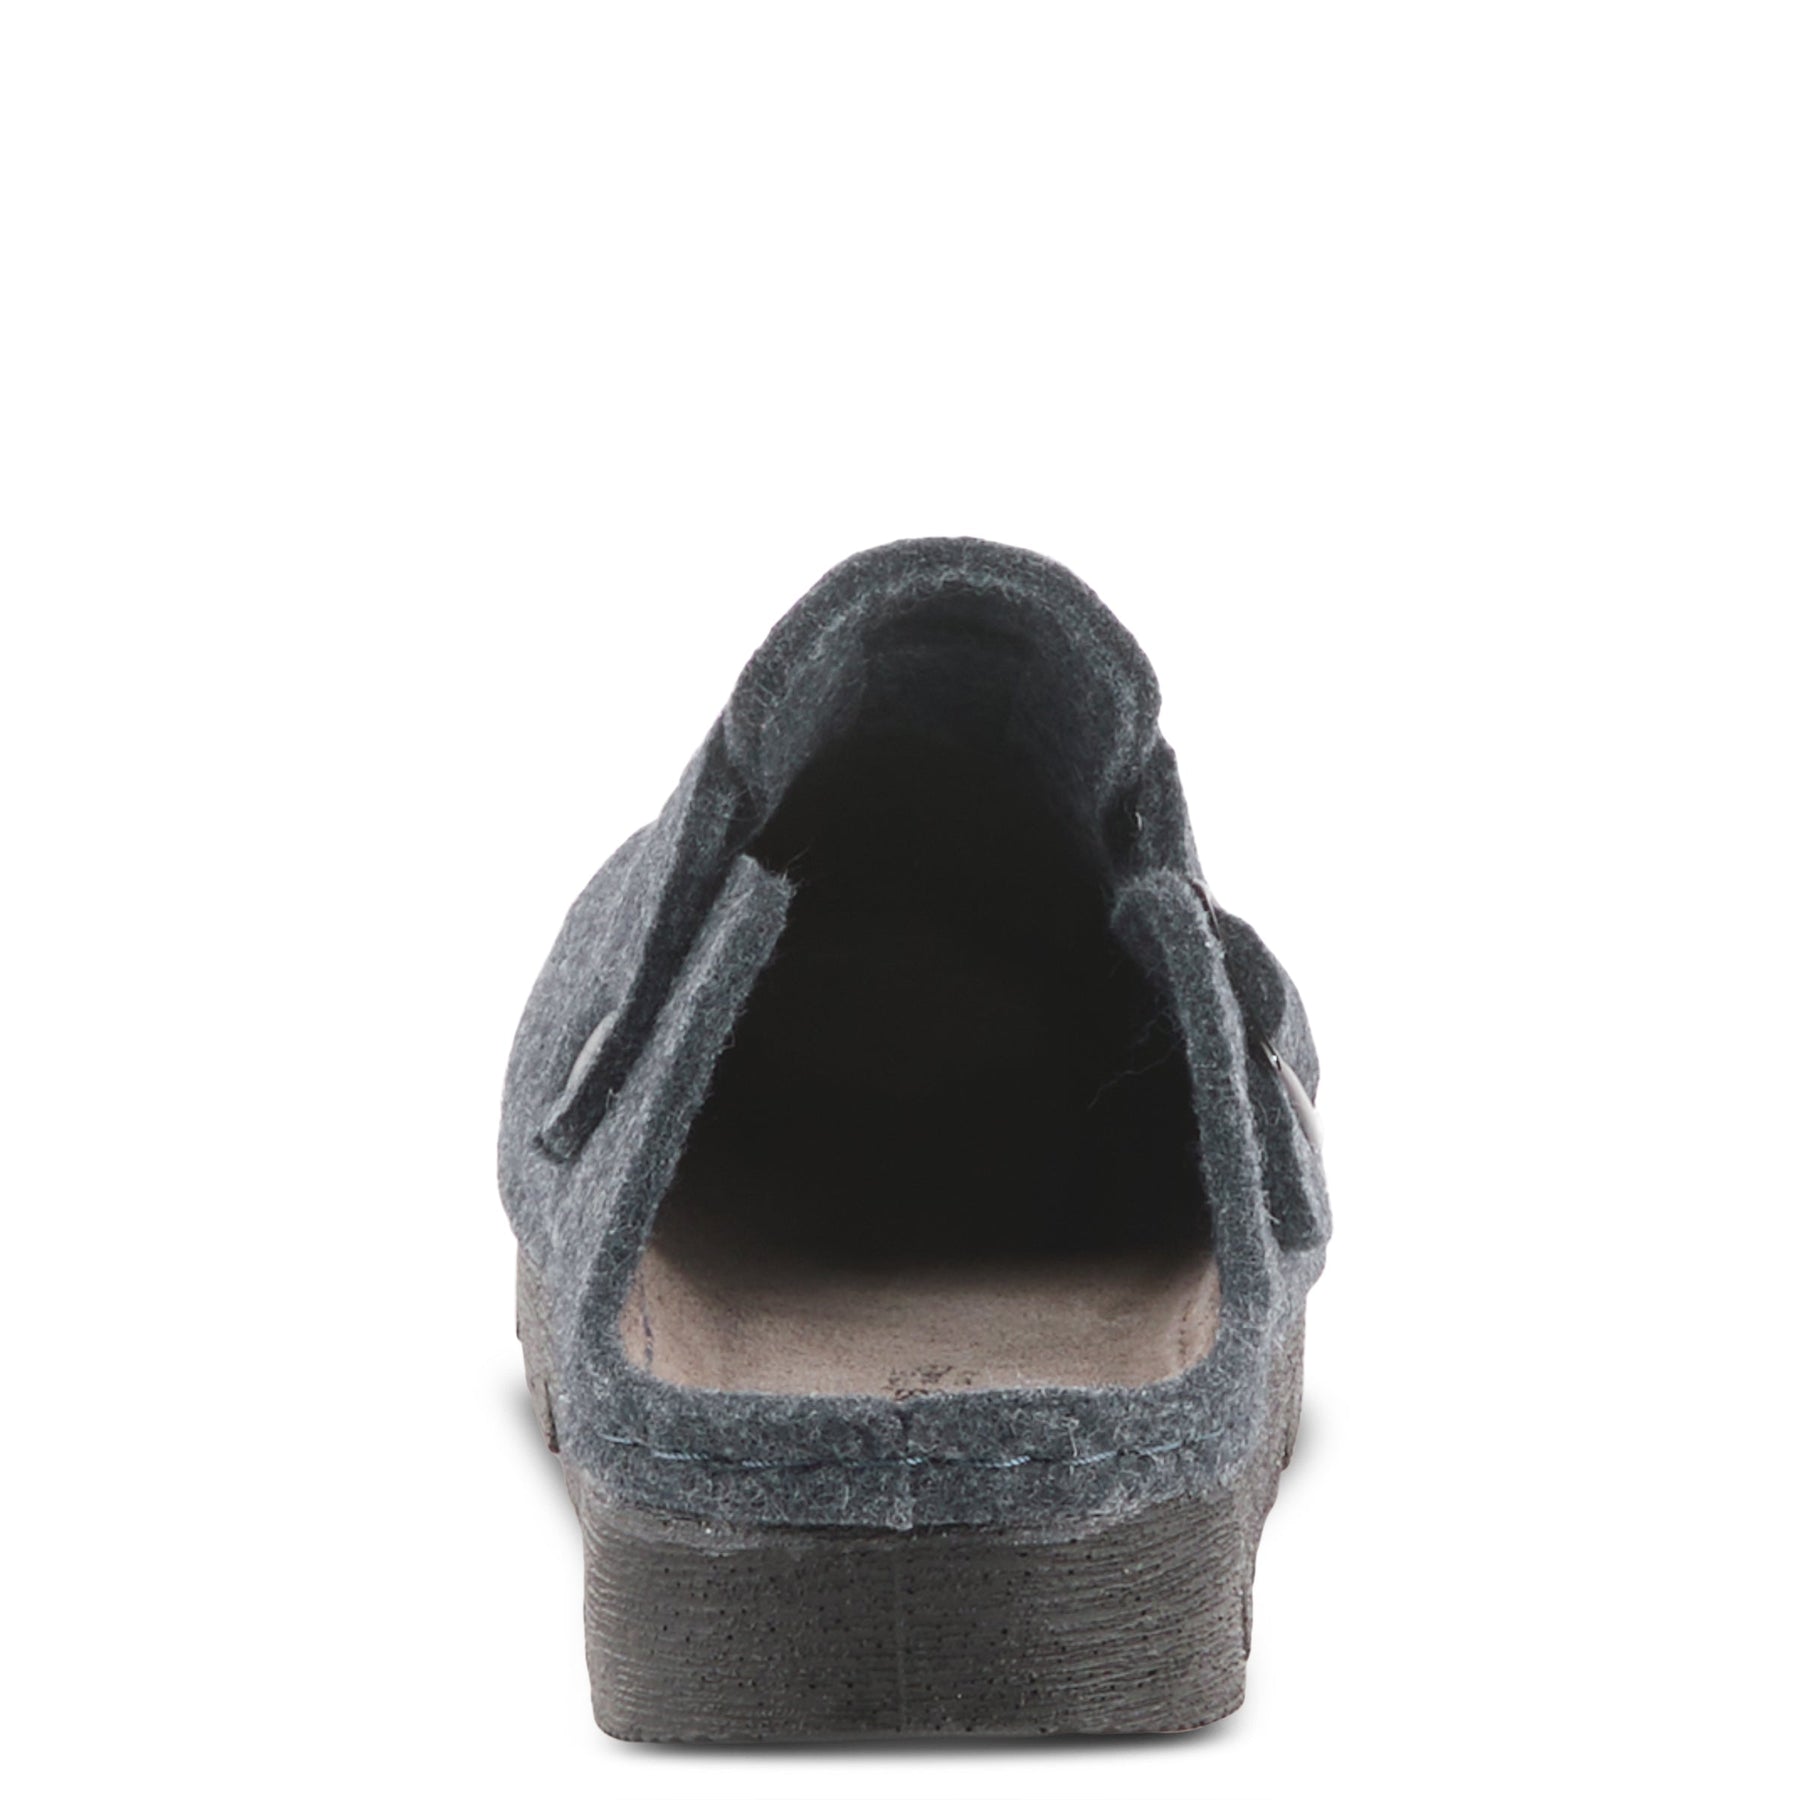 CLOGGER PLATFORM CLOG by FLEXUS – Spring Step Shoes